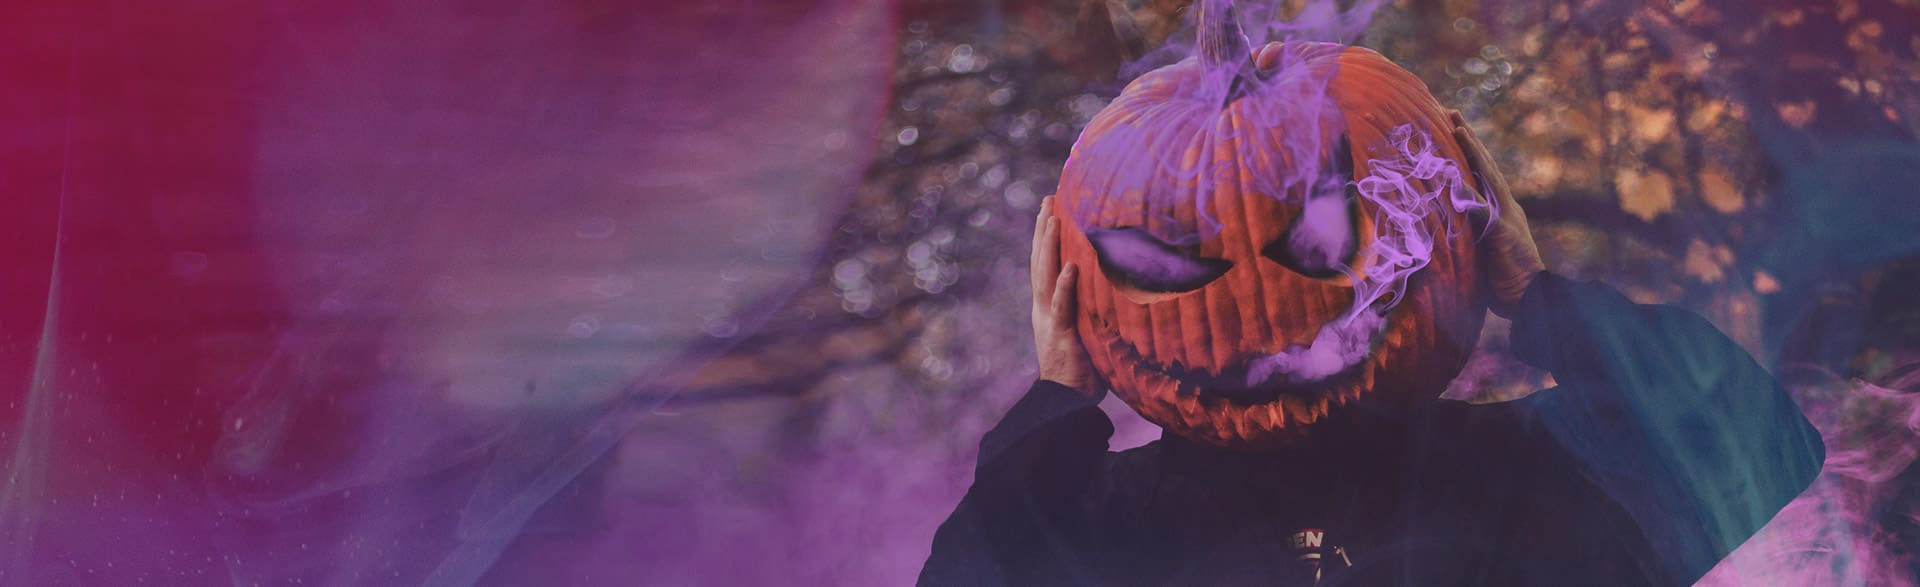 Playlist especial halloween: calabaza de halloween con humo morado